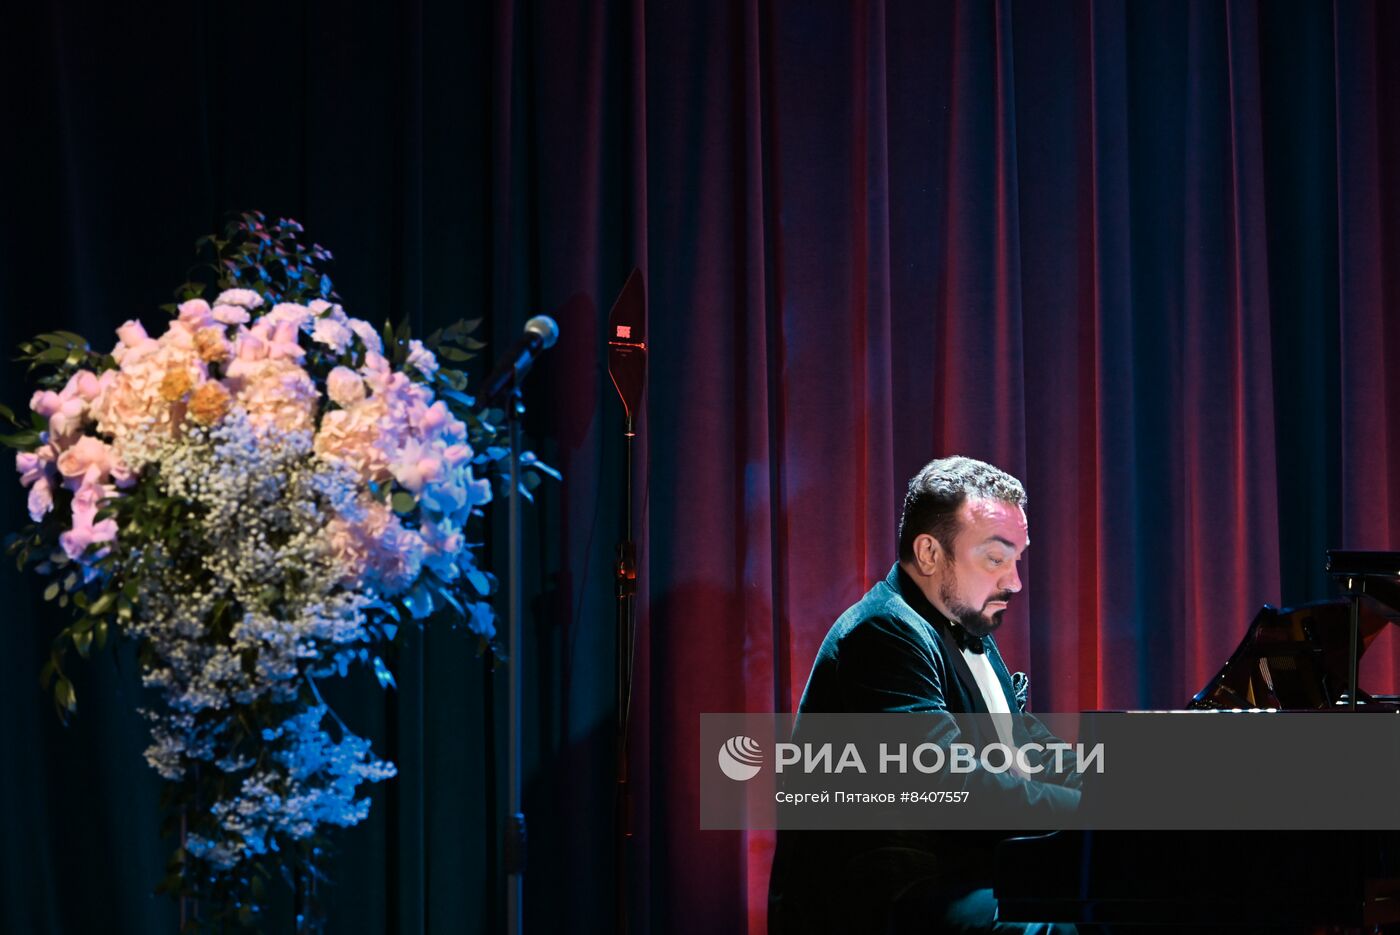 Юбилейный концерт заслуженной артистки России Ирины Костровой